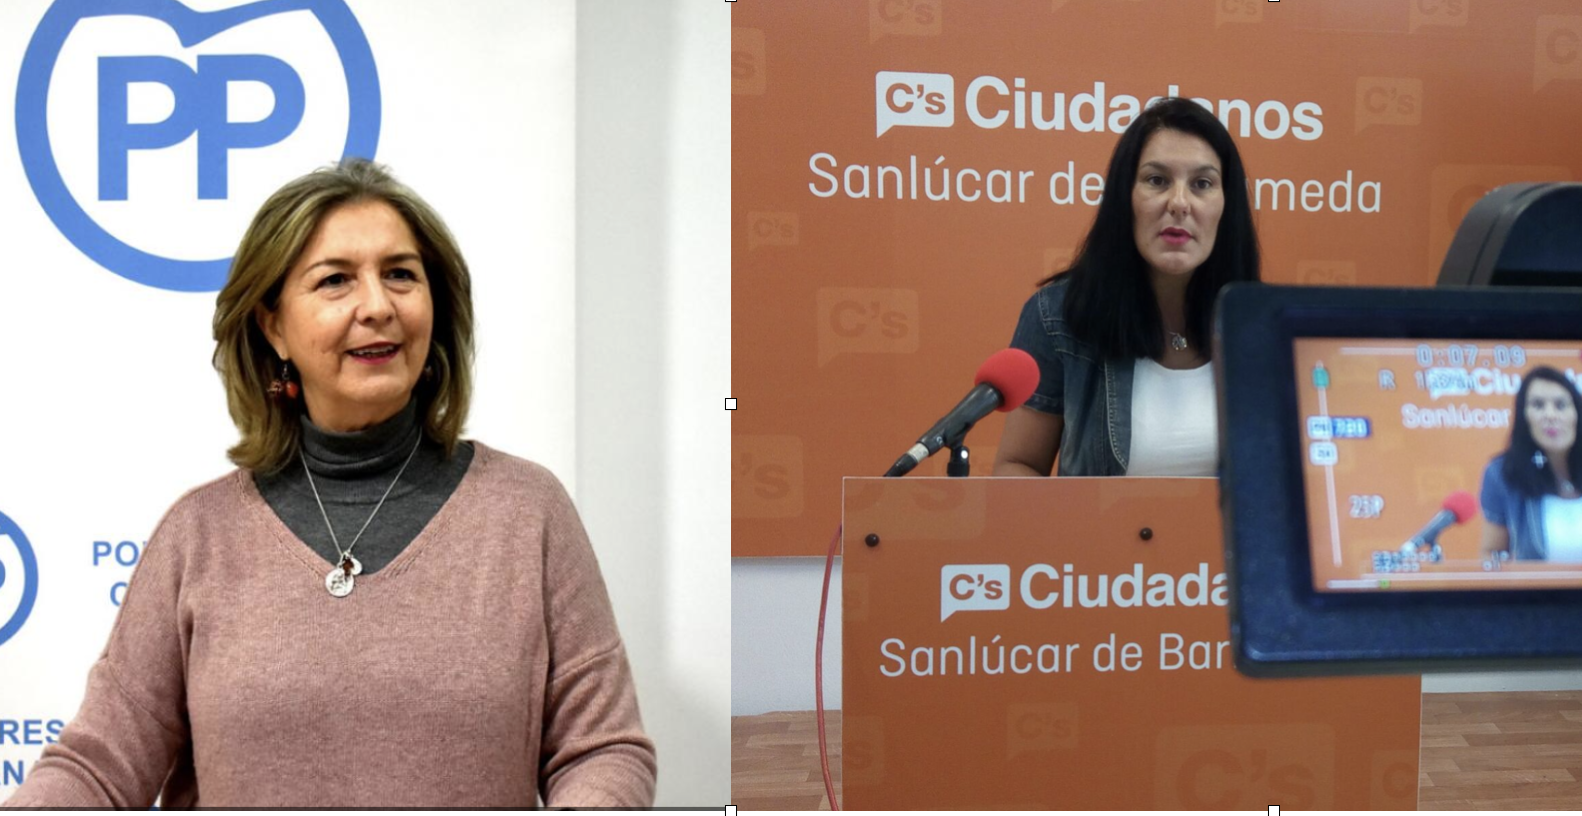 Una ex concejal del PP en Chiclana, Ana Bertón, y la ex coordinadora de Cs en Sanlúcar, María José Herencia, nuevas delegadas de la Junta en Cádiz